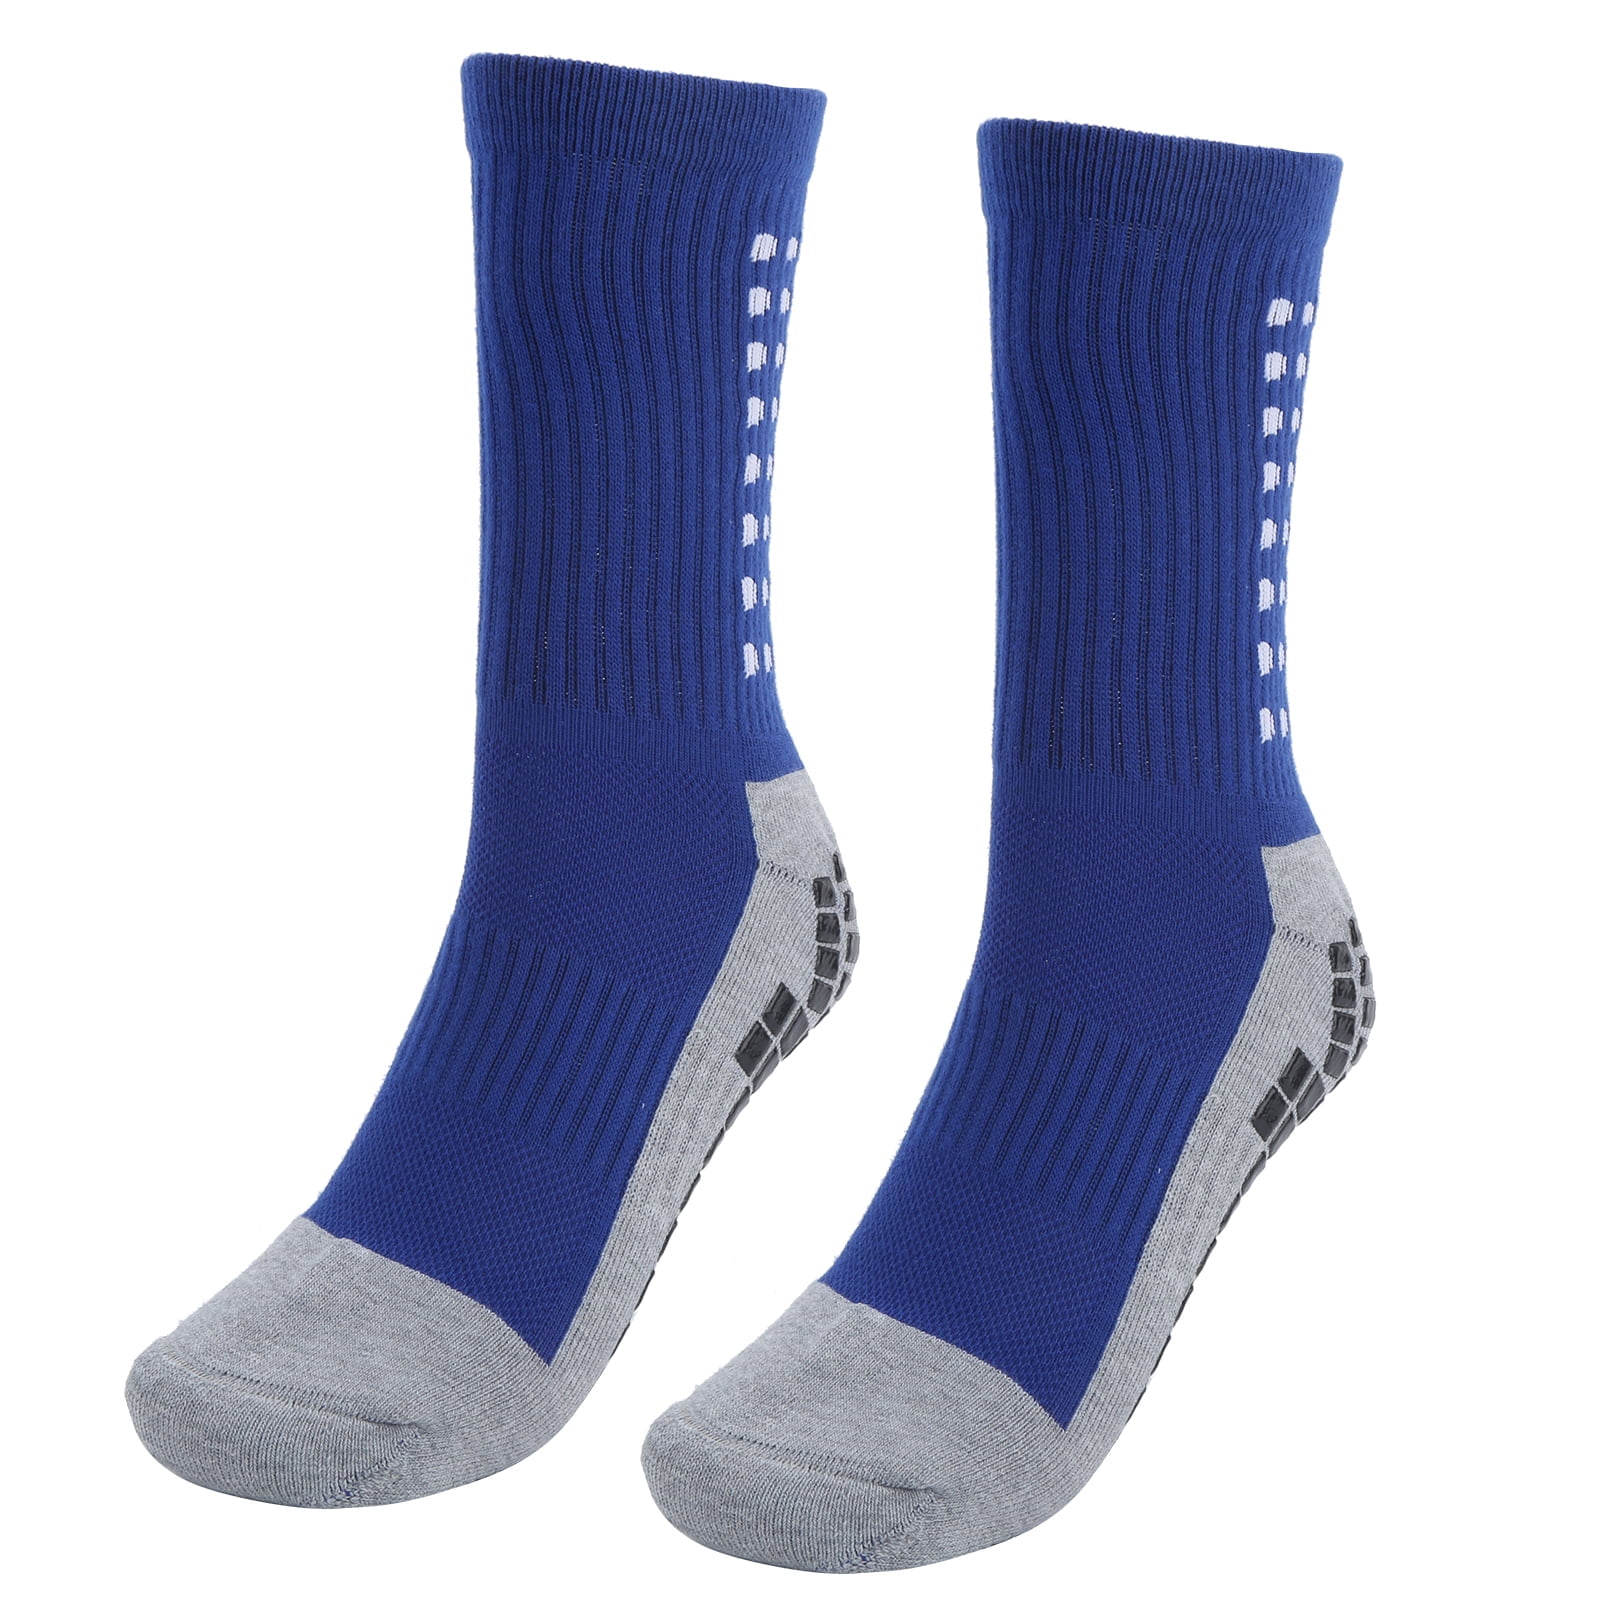 Rubber Grip Socks, Sports Socks Rubber Soles For Sports For Men Blue ...